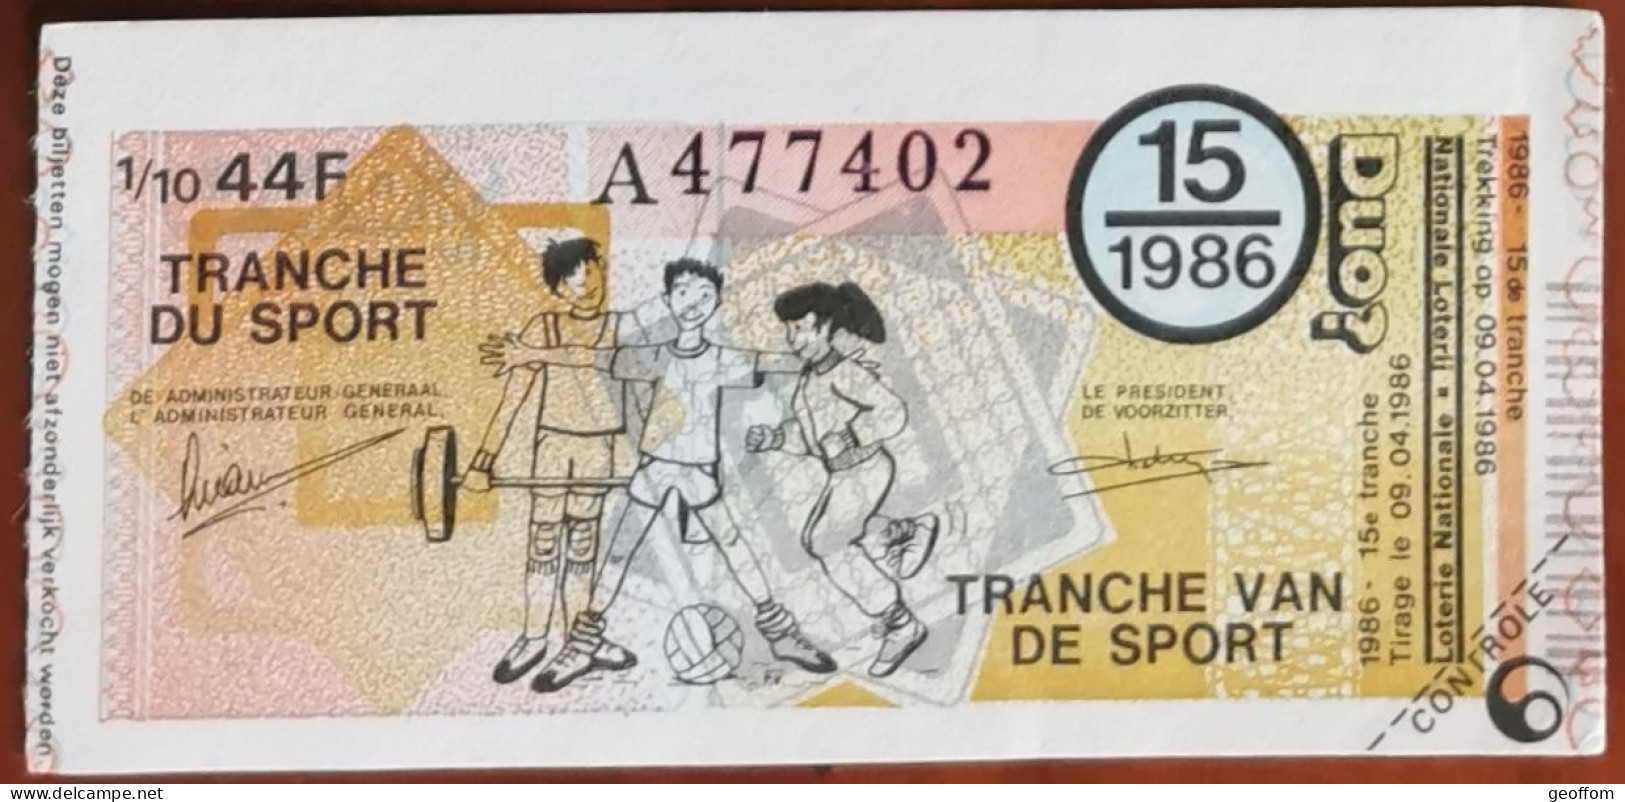 Billet De Loterie Nationale Belgique 1986 15e Tranche Du Sport - 9-4-1986 - Billetes De Lotería